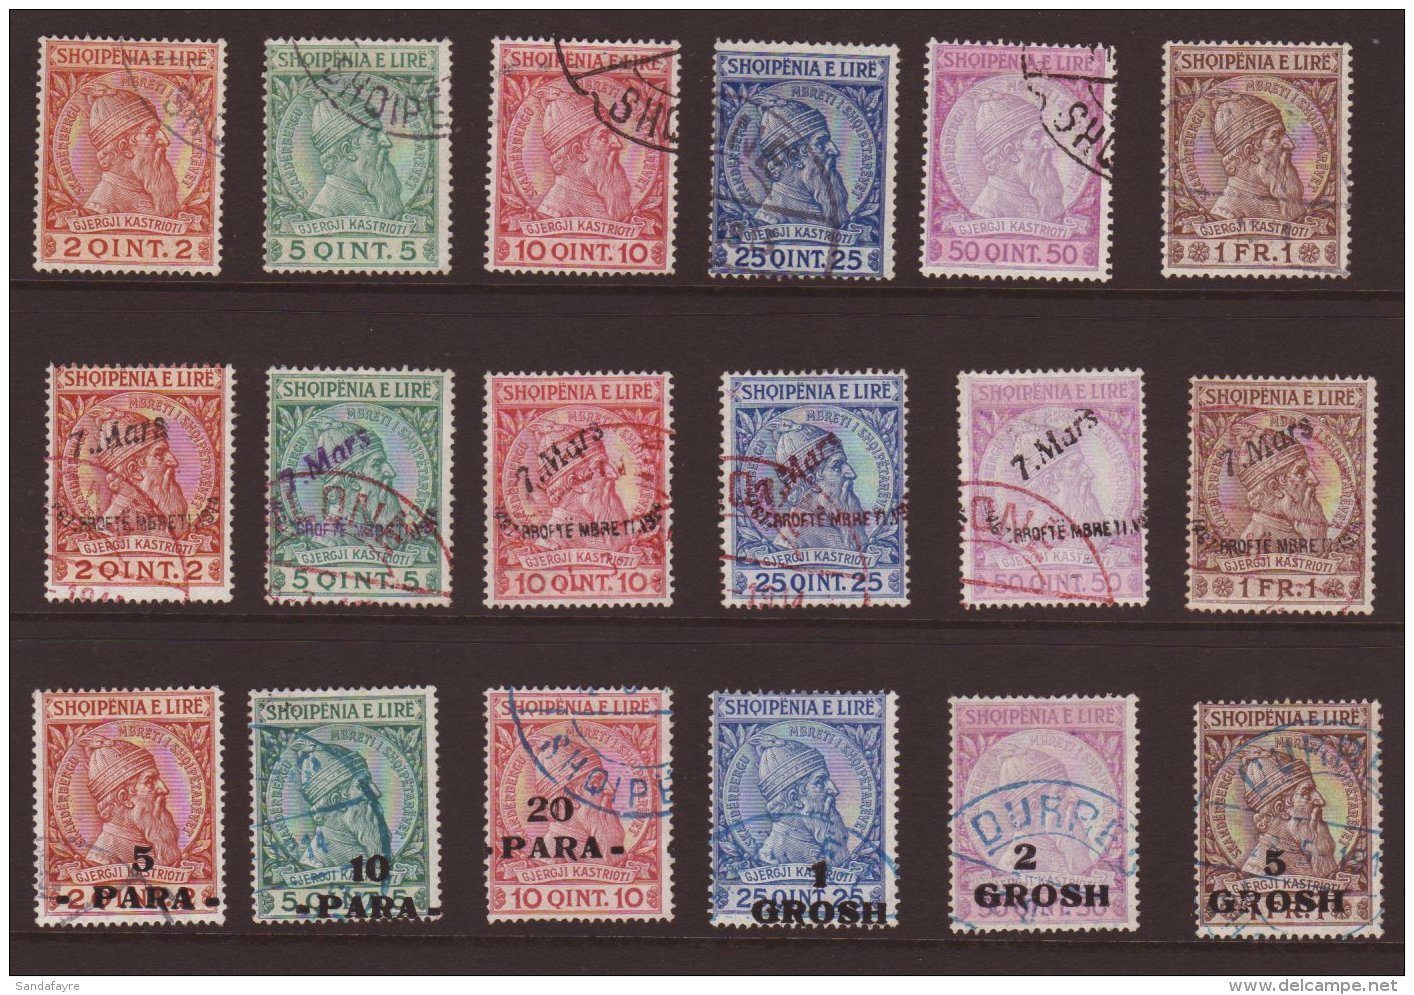 1913 - 1914 SKANDERBEG ISSUES Fine Used Selection Comprising 1913 Set, 1914 "7 Mars" Ovpt Set, 1914 Surcharge Set,... - Albanië